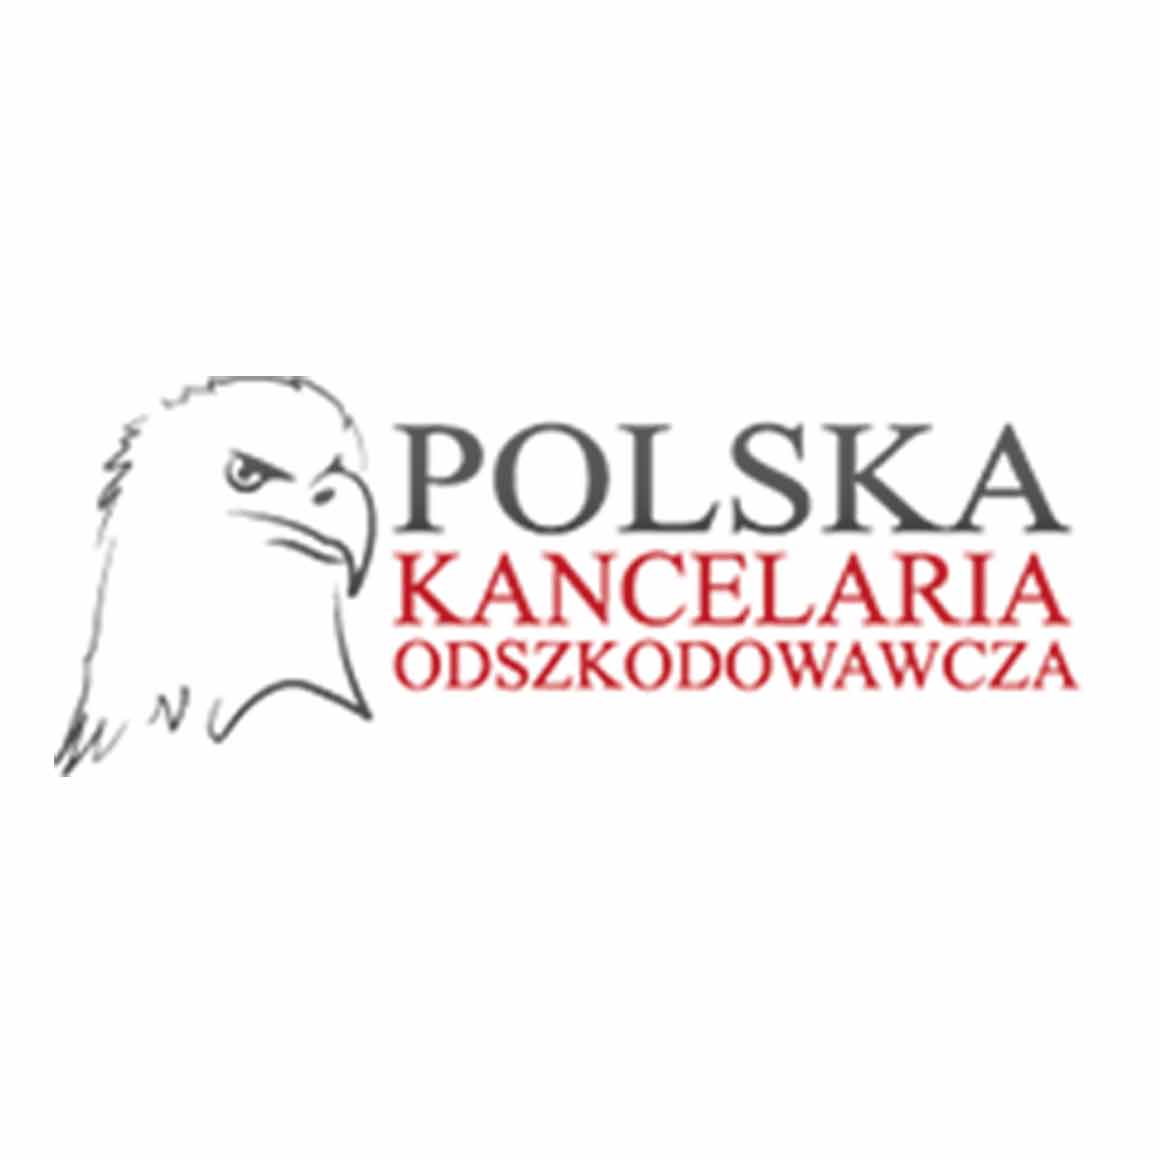 Polska Kancelaria Odszkodowawcza